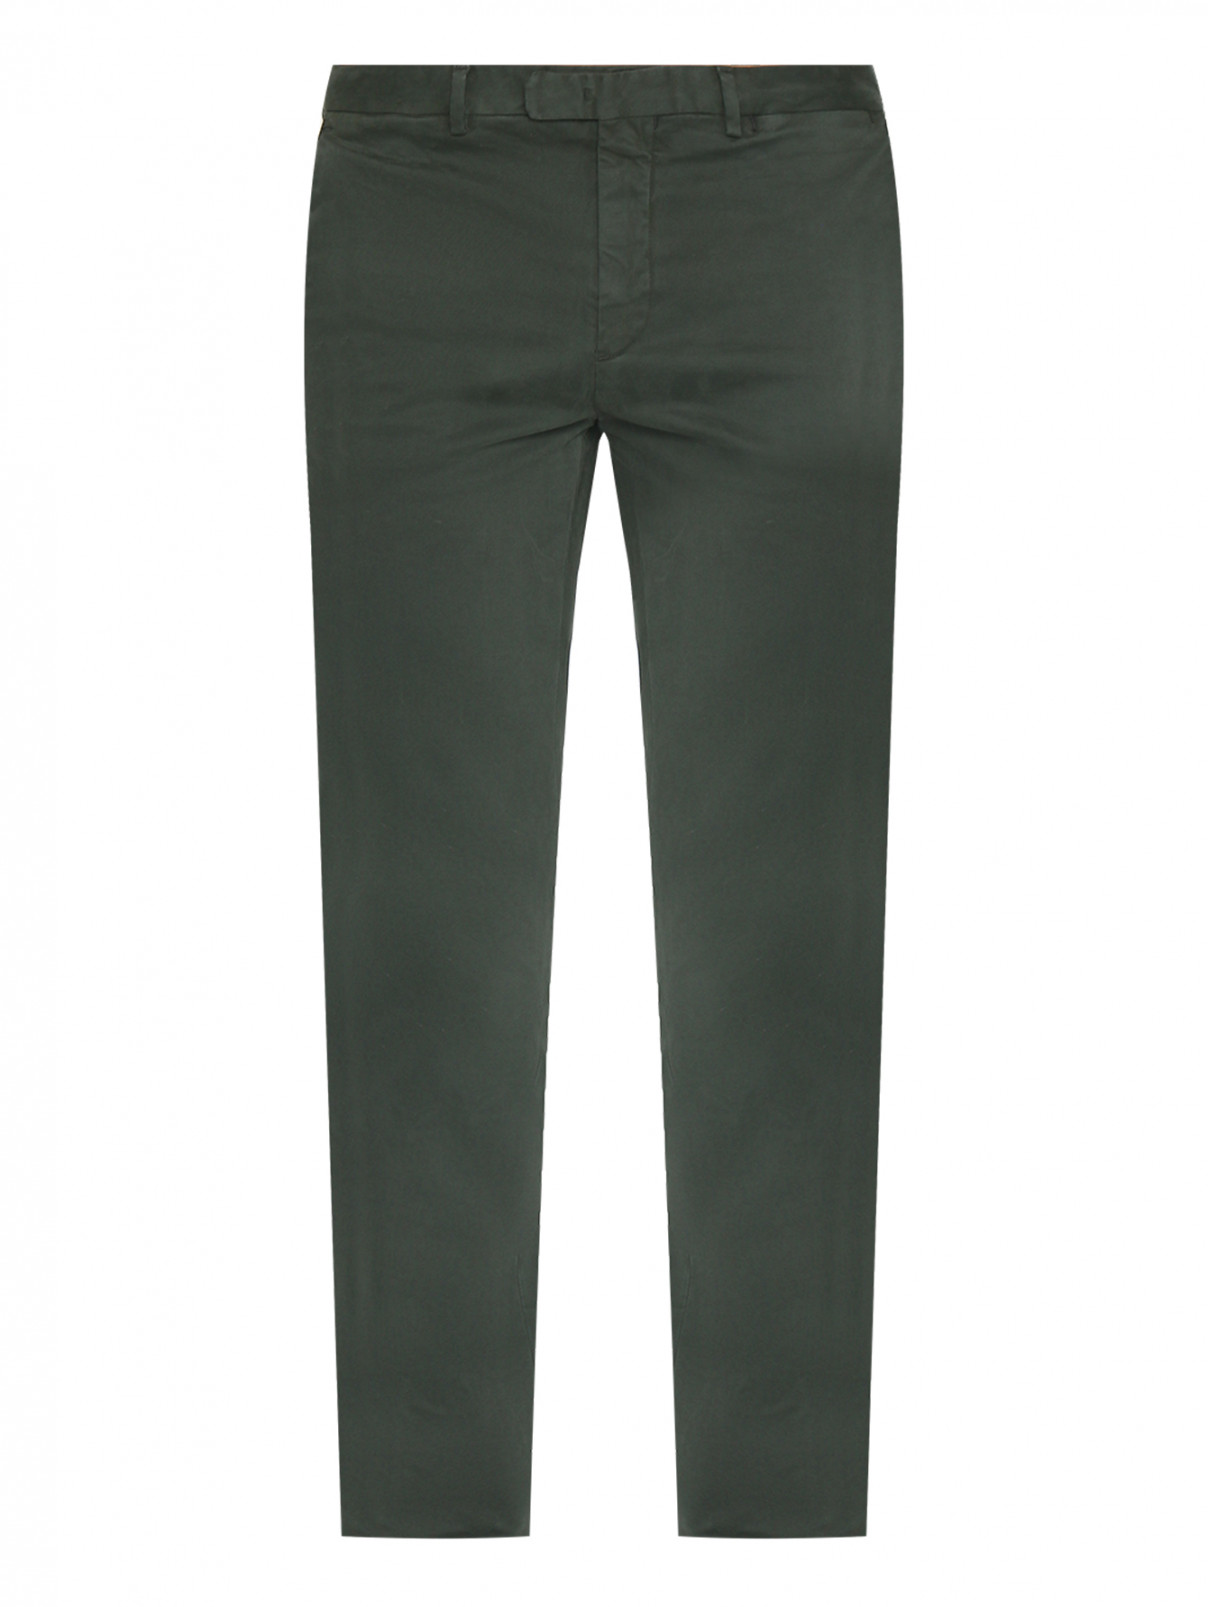 Зауженные брюки из хлопка Boglioli  –  Общий вид  – Цвет:  Зеленый